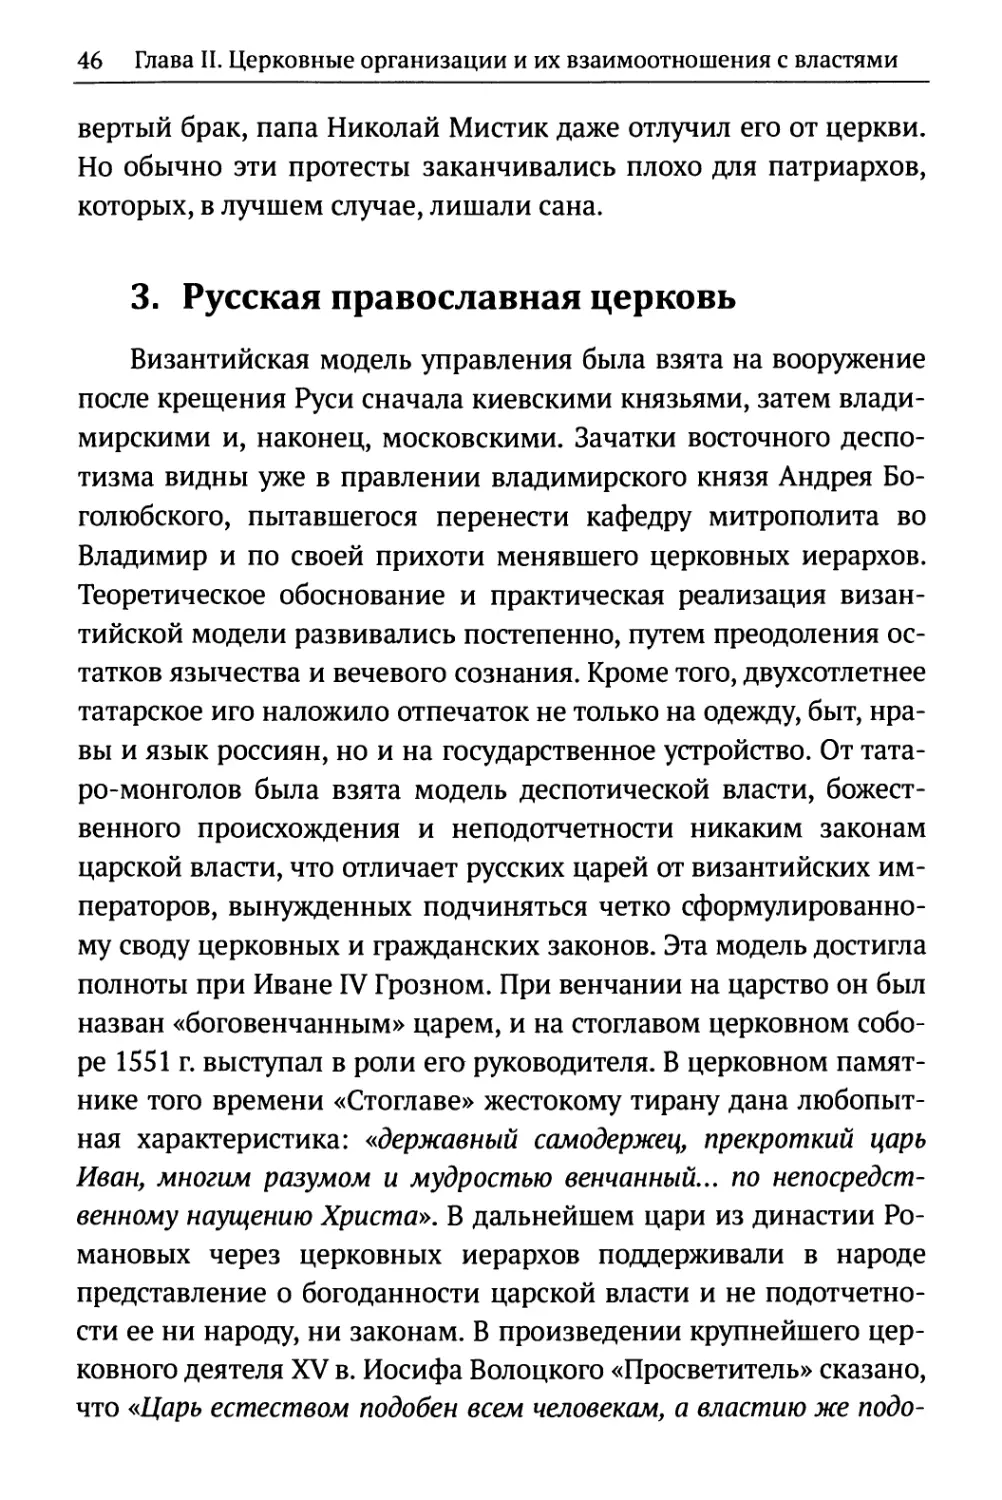 3. Русская православная церковь